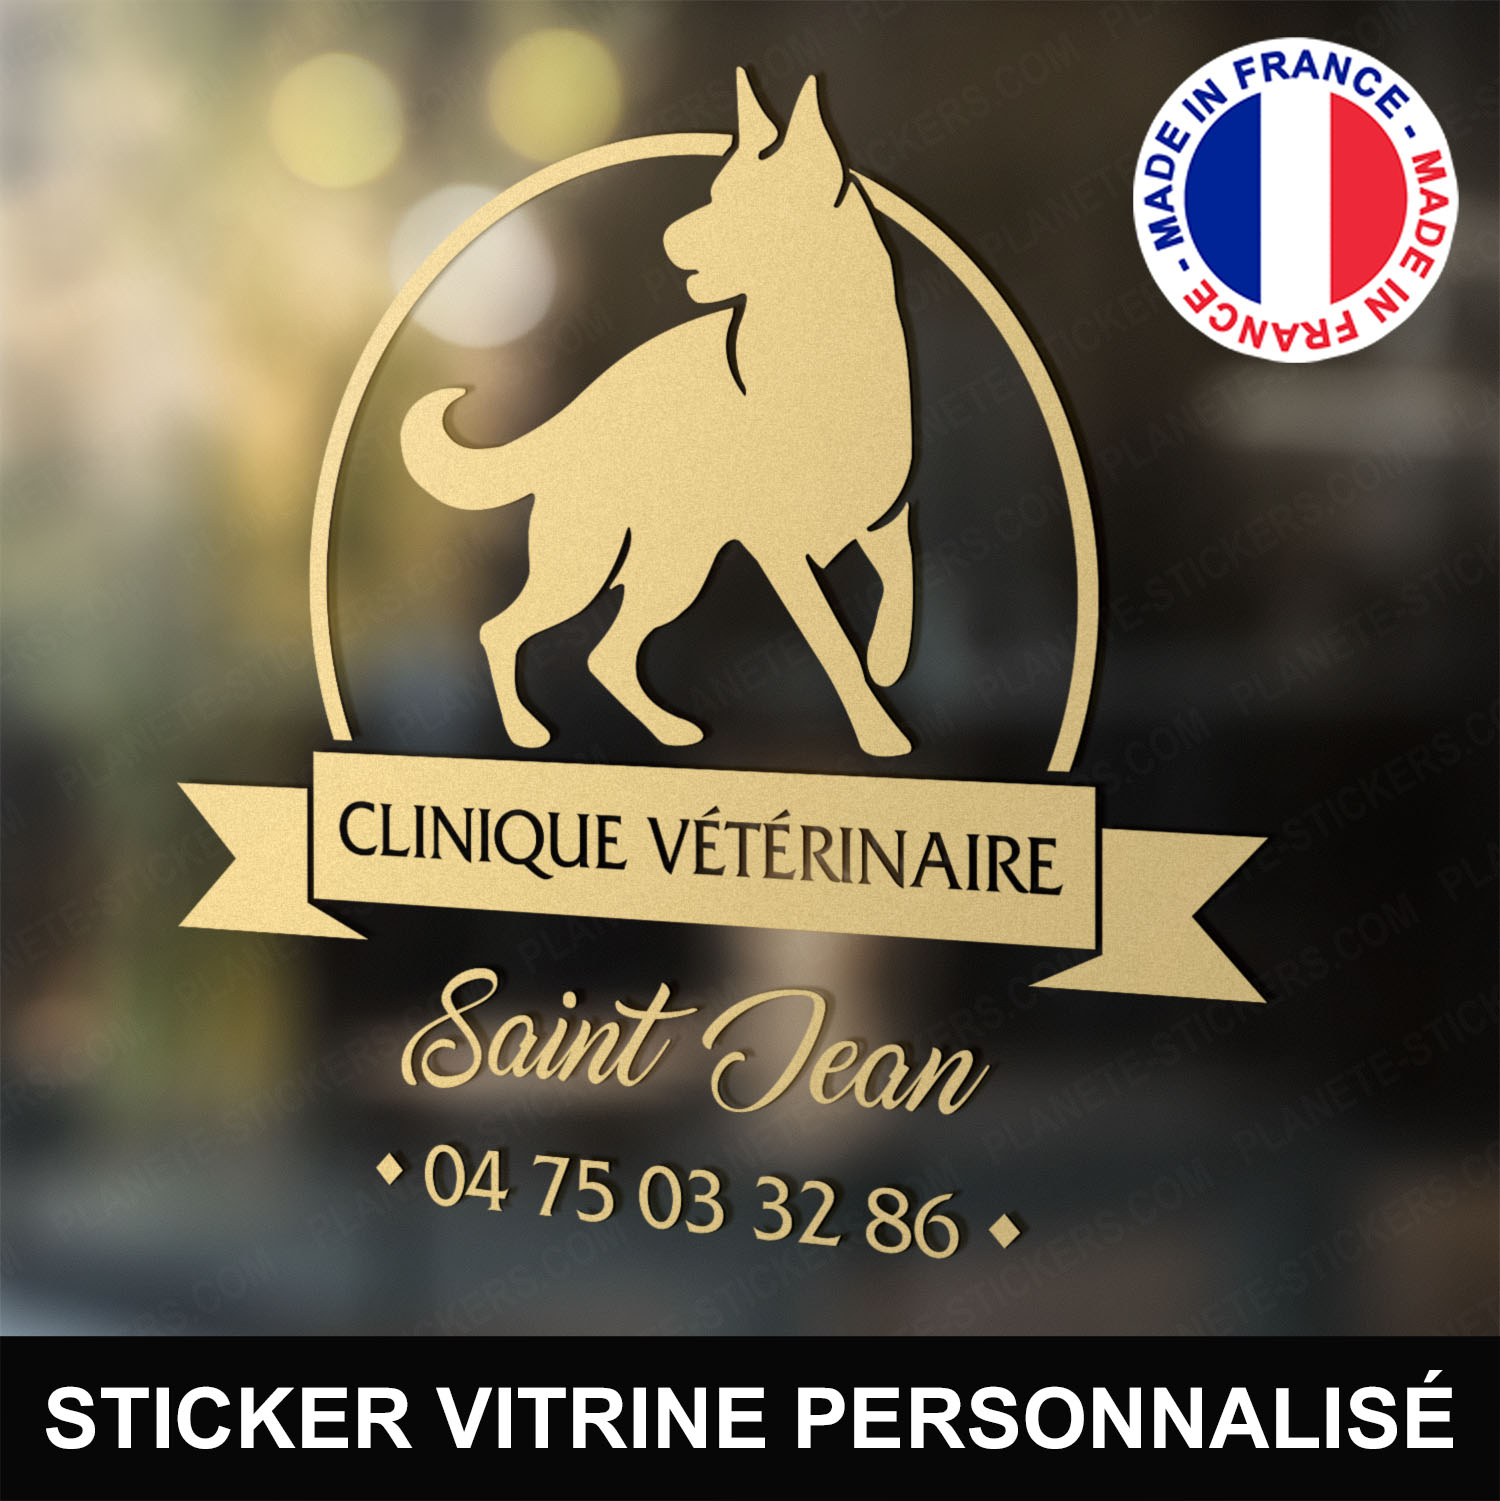 ref3veterinairevitrine-stickers-clinique-vétérinaire-vitrine-sticker-personnalisé-autocollant-pro-veterinaire-professionnel